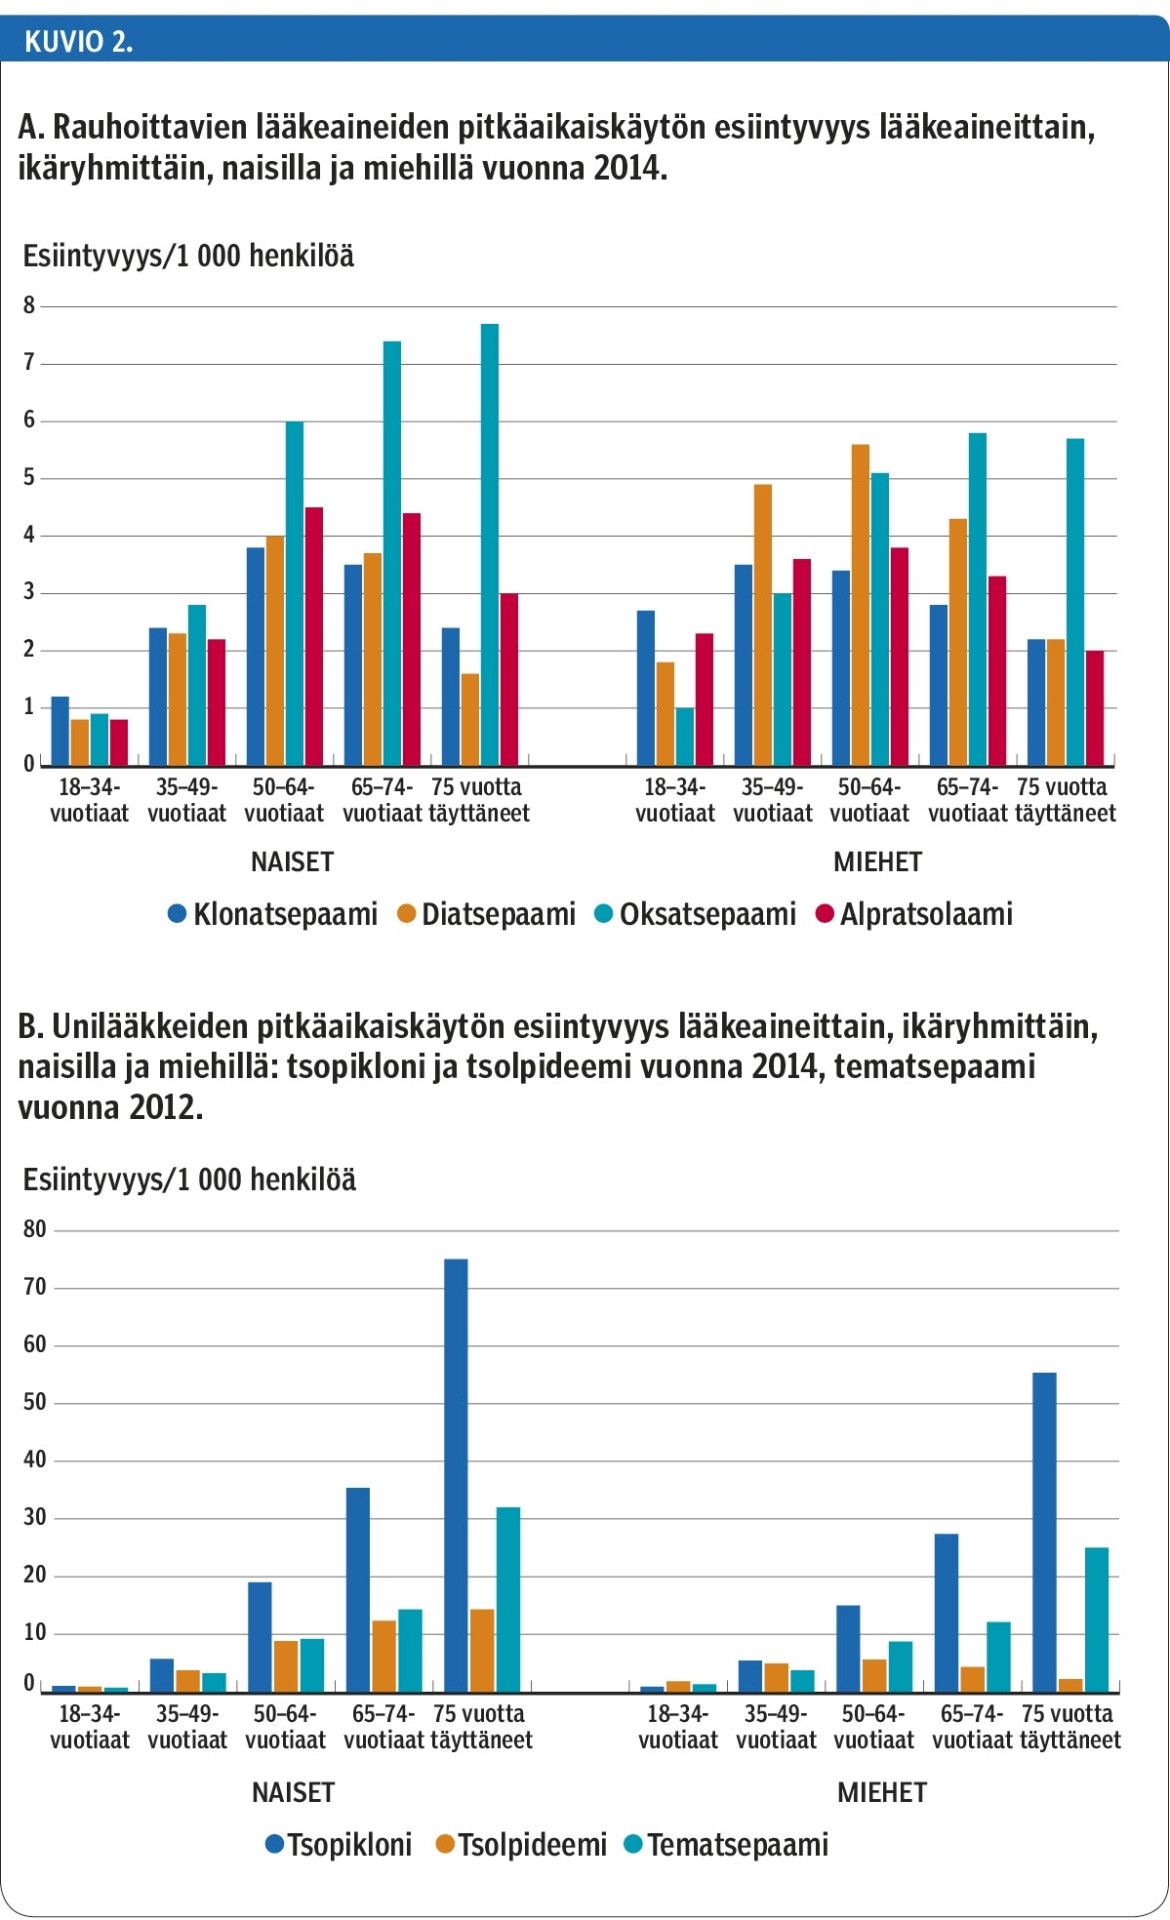 A. Rauhoittavien lääkeaineiden pitkäaikaiskäytön esiintyvyys lääkeaineittain, ikäryhmittäin, naisilla ja miehillä vuonna 2014.B. Unilääkkeiden pitkäaikaiskäytön esiintyvyys lääkeaineittain, ikäryhmittäin, naisilla ja miehillä: tsopikloni ja tsolpideemi vuonna 2014, tematsepaami vuonna 2012.<p/>